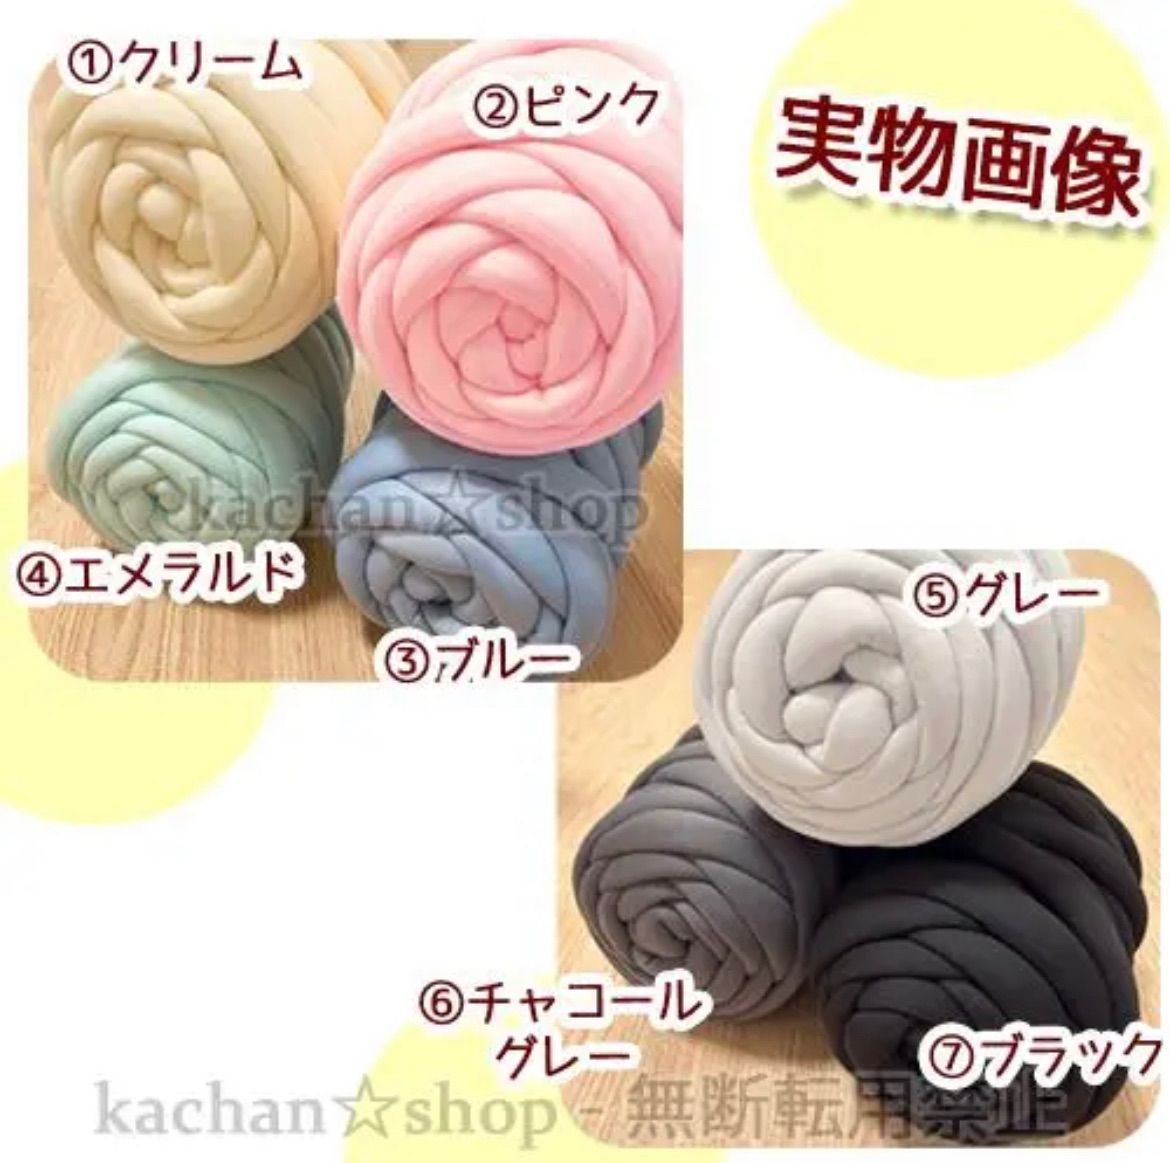 【作り方付き】選べる7色 チャンキーニット 毛糸 編み方 マンドゥバッグ 韓国